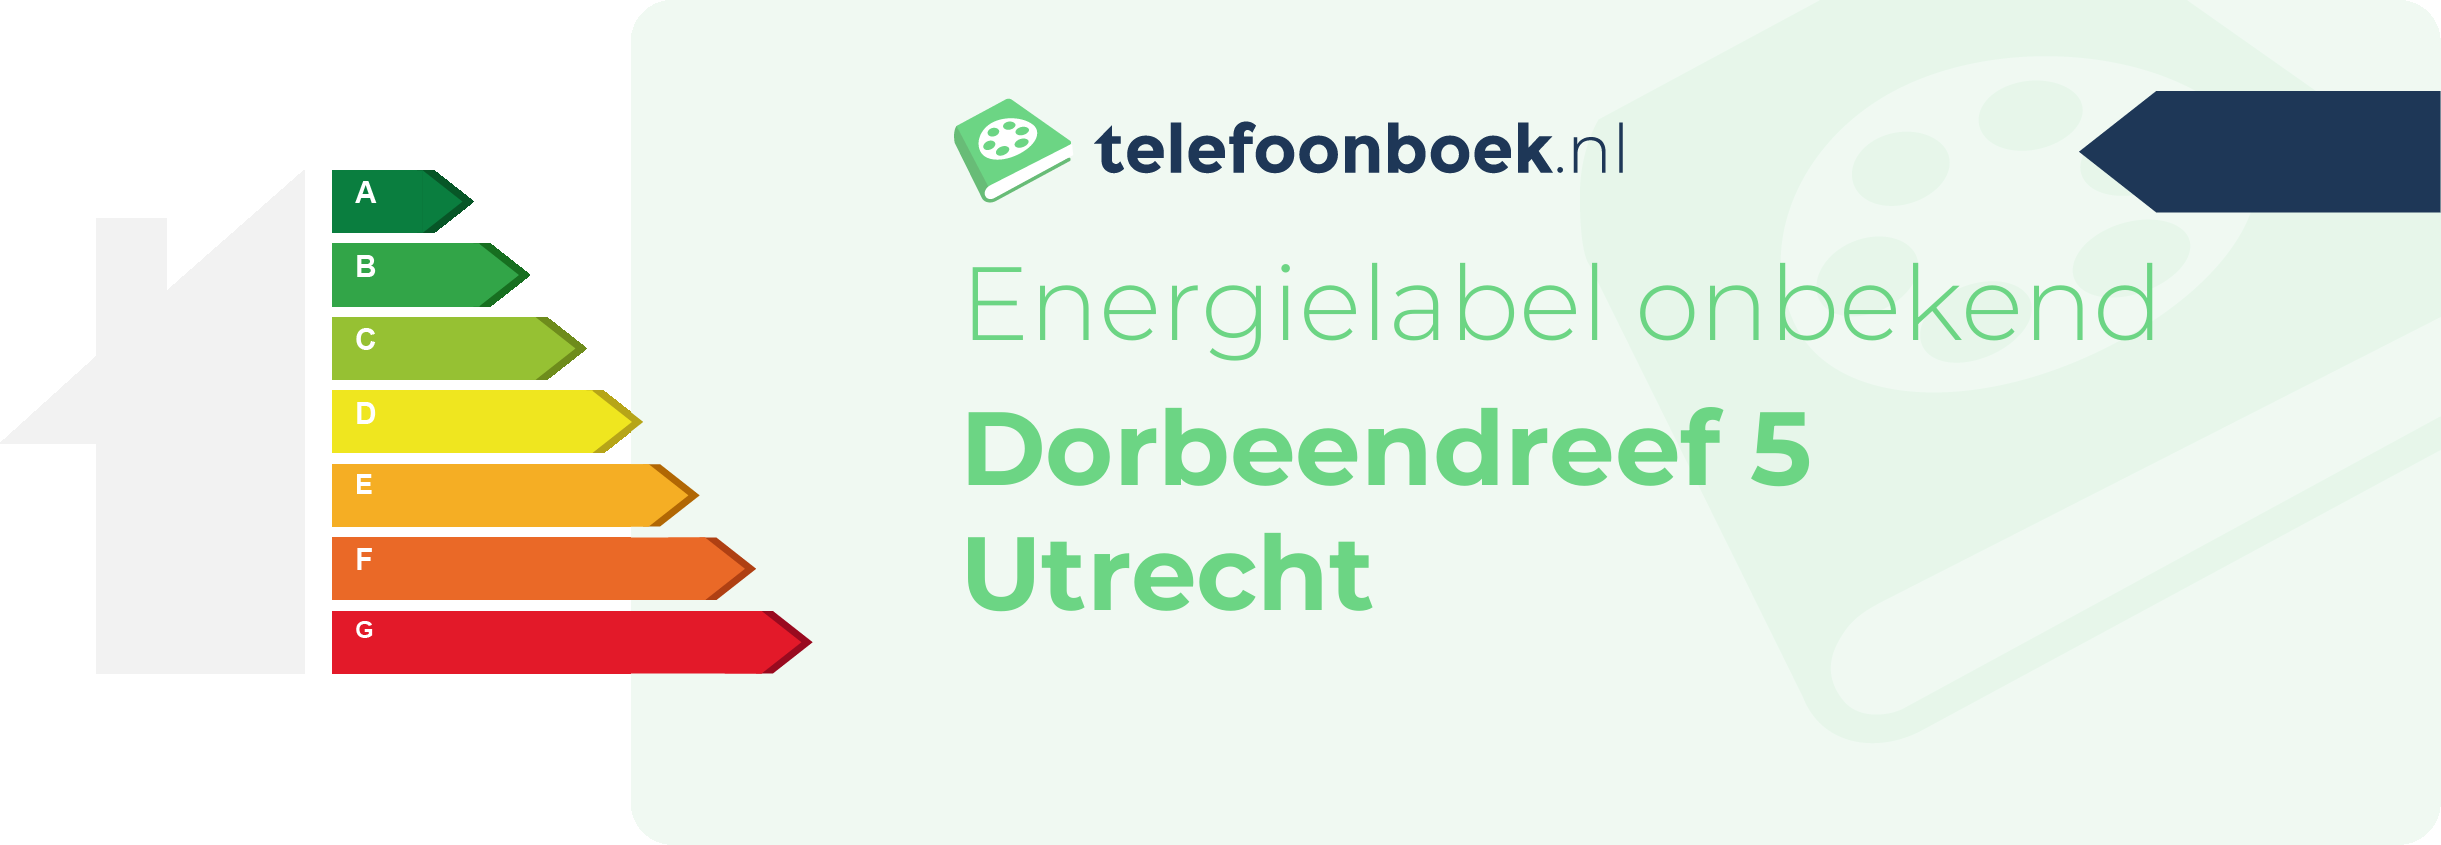 Energielabel Dorbeendreef 5 Utrecht